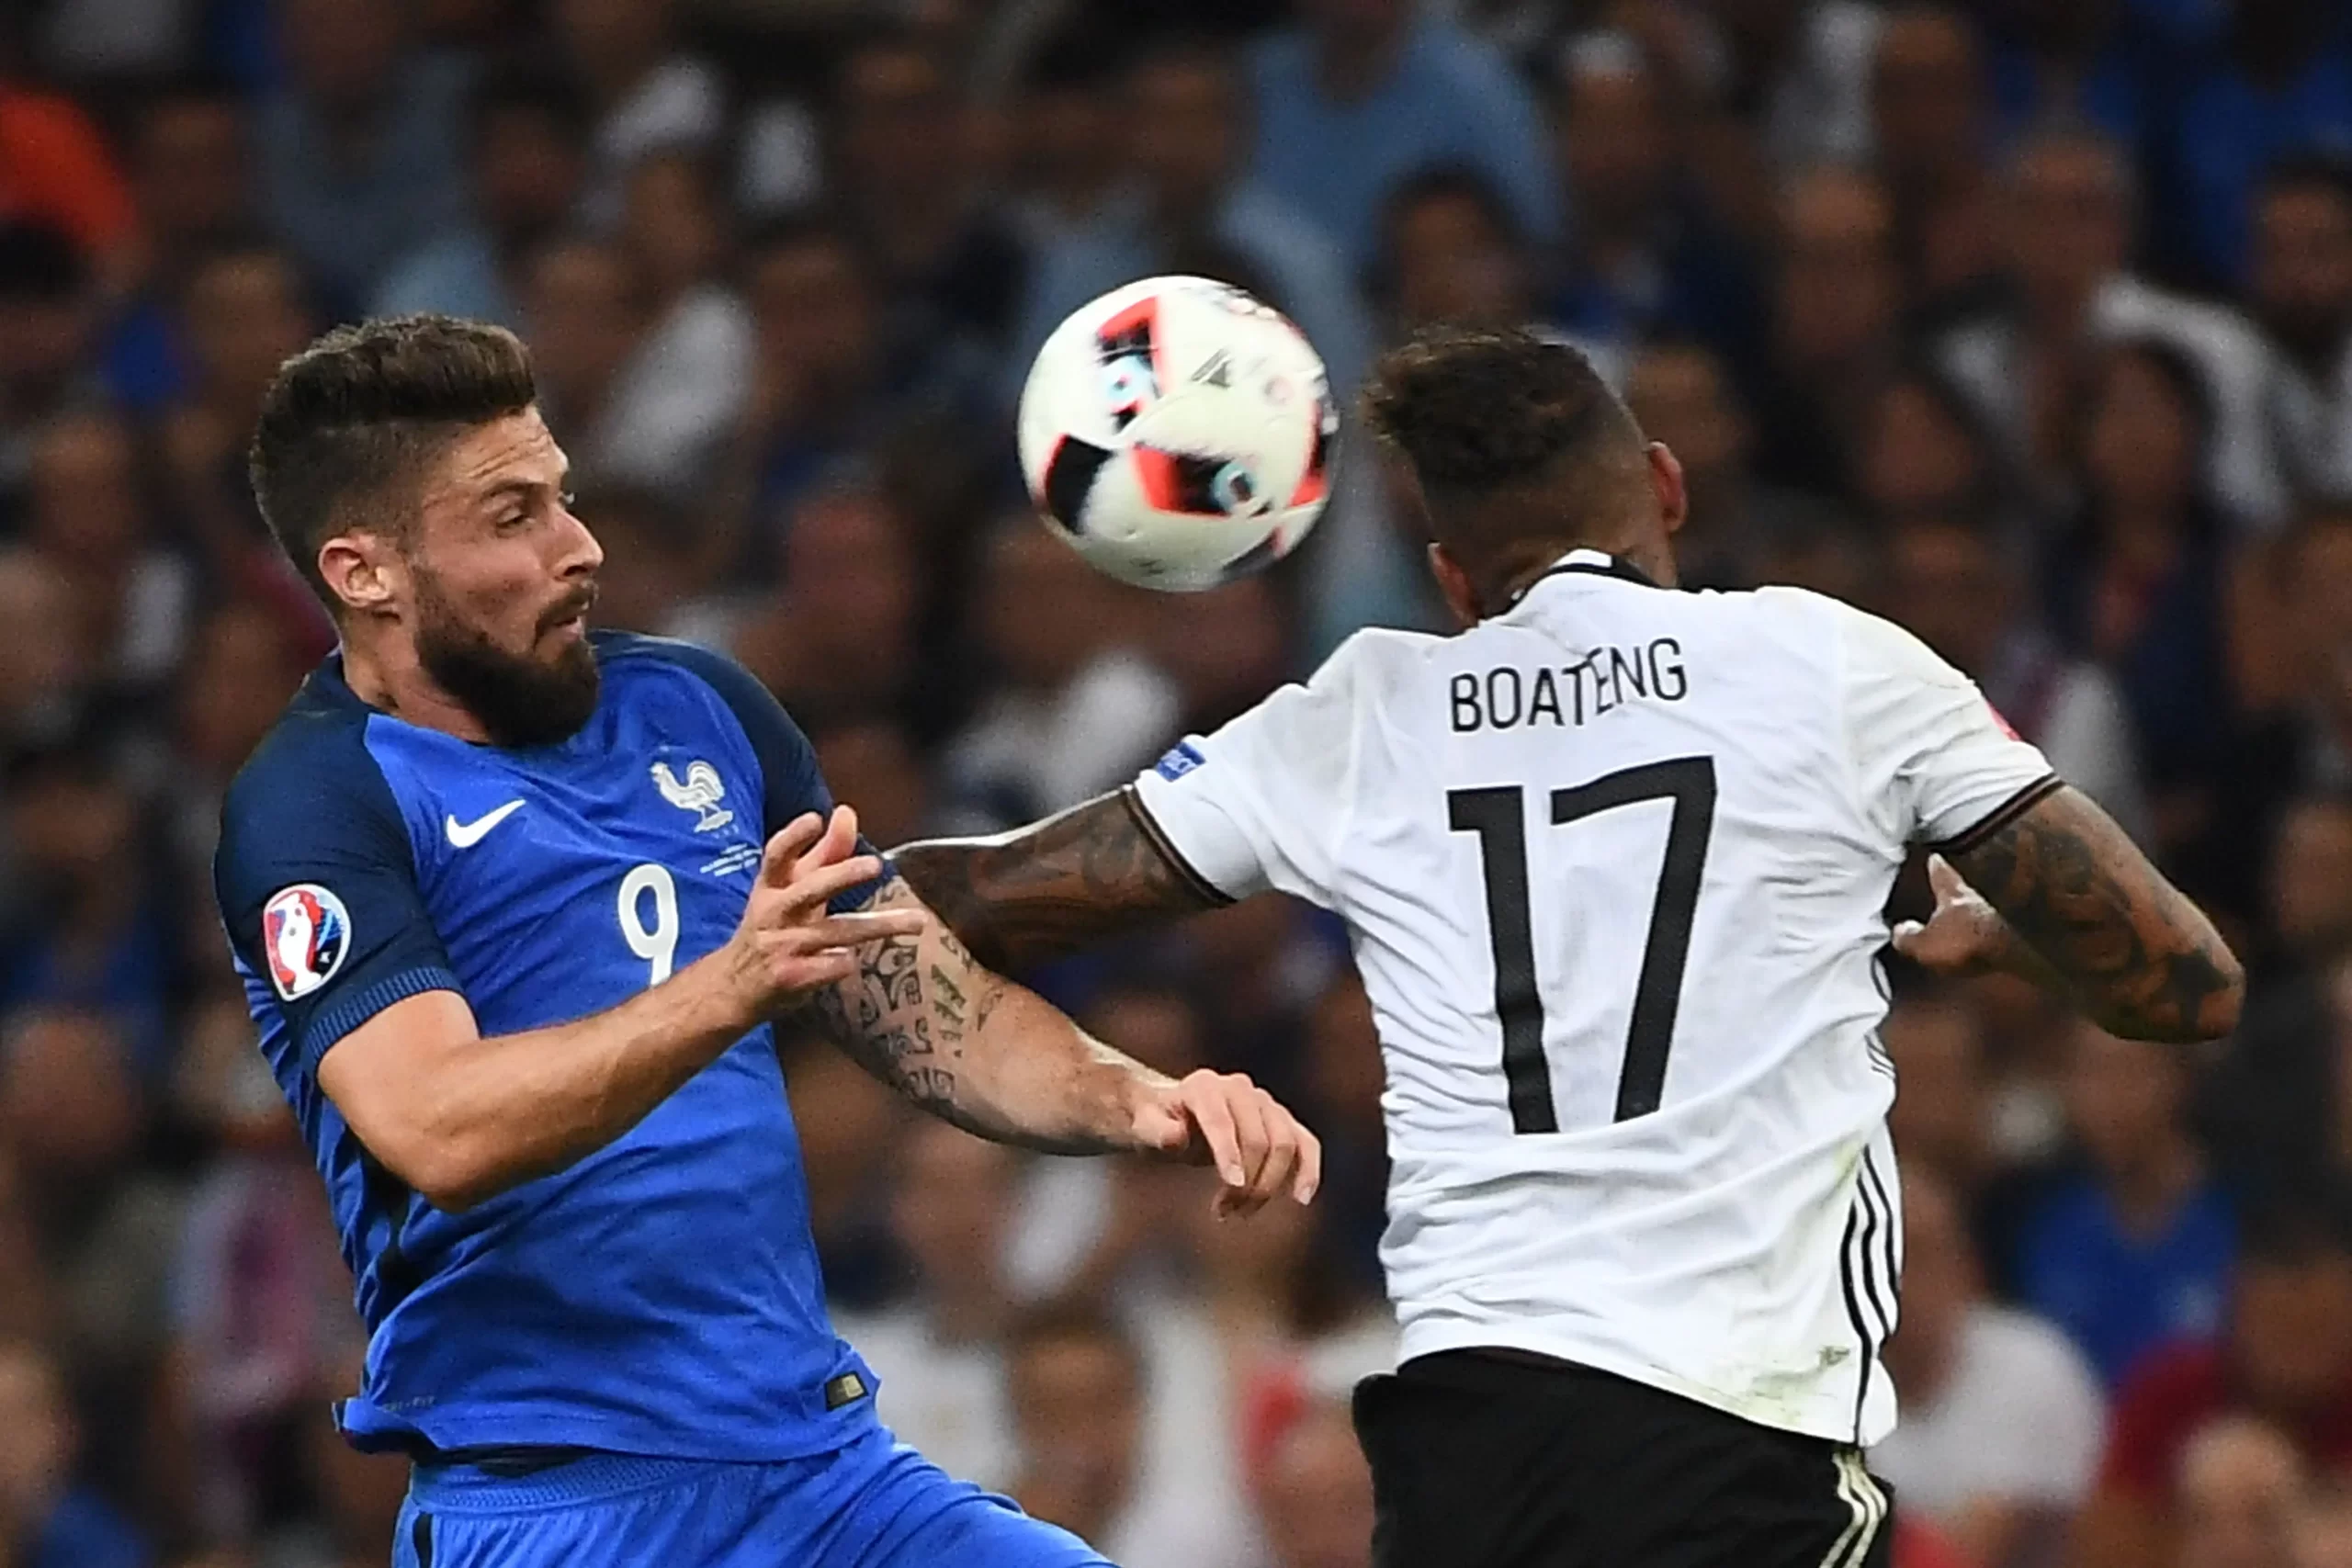 Germany vs France rivalry